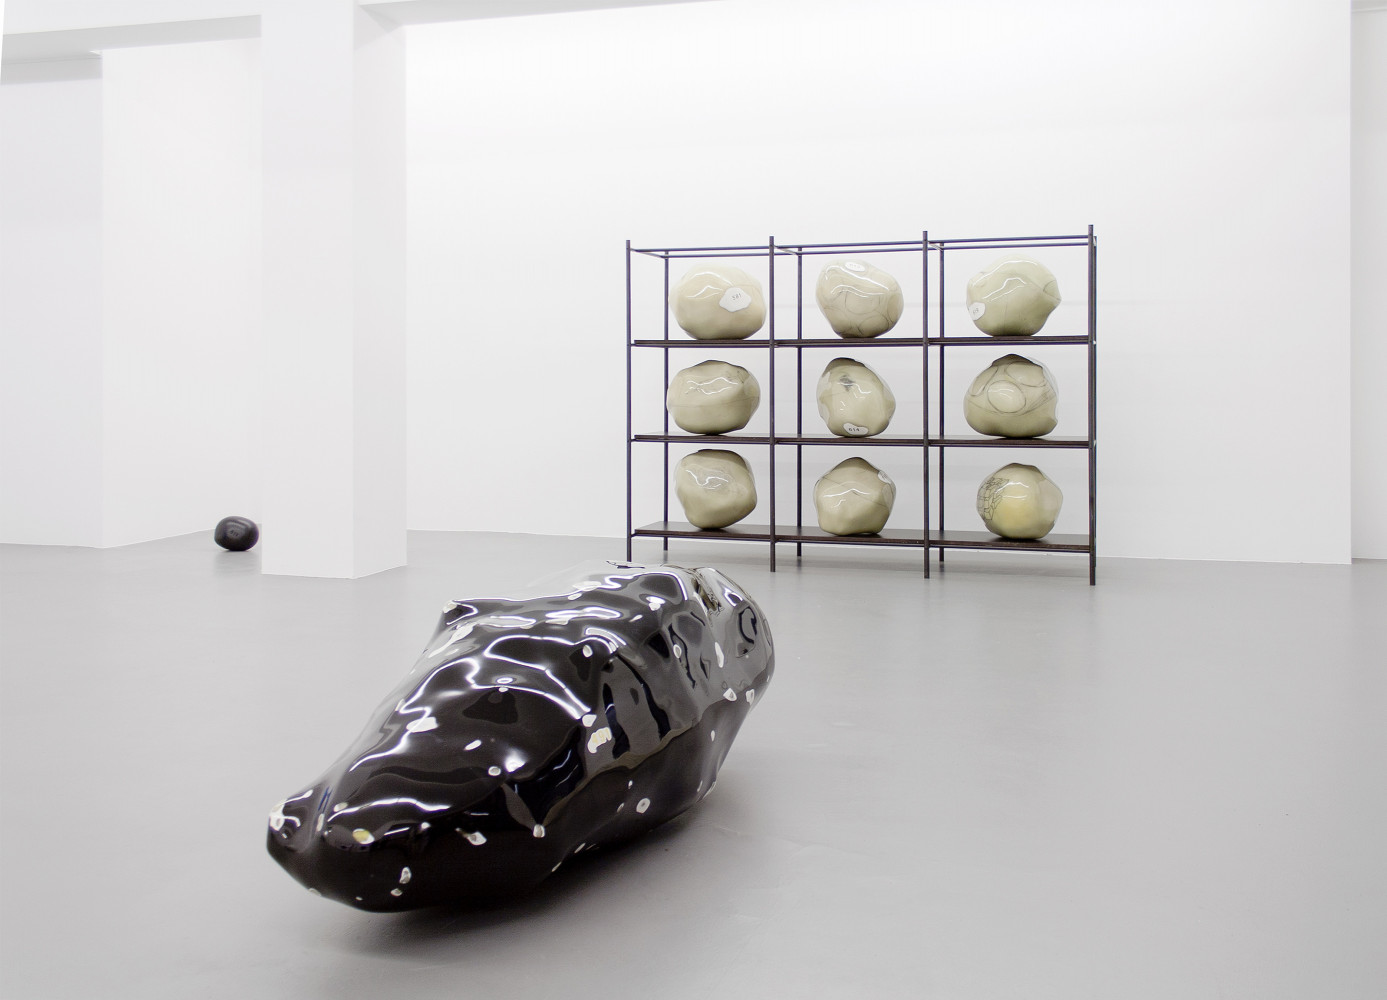 Wilhelm Mundt, Installationsansicht, Buchmann Galerie, 2015